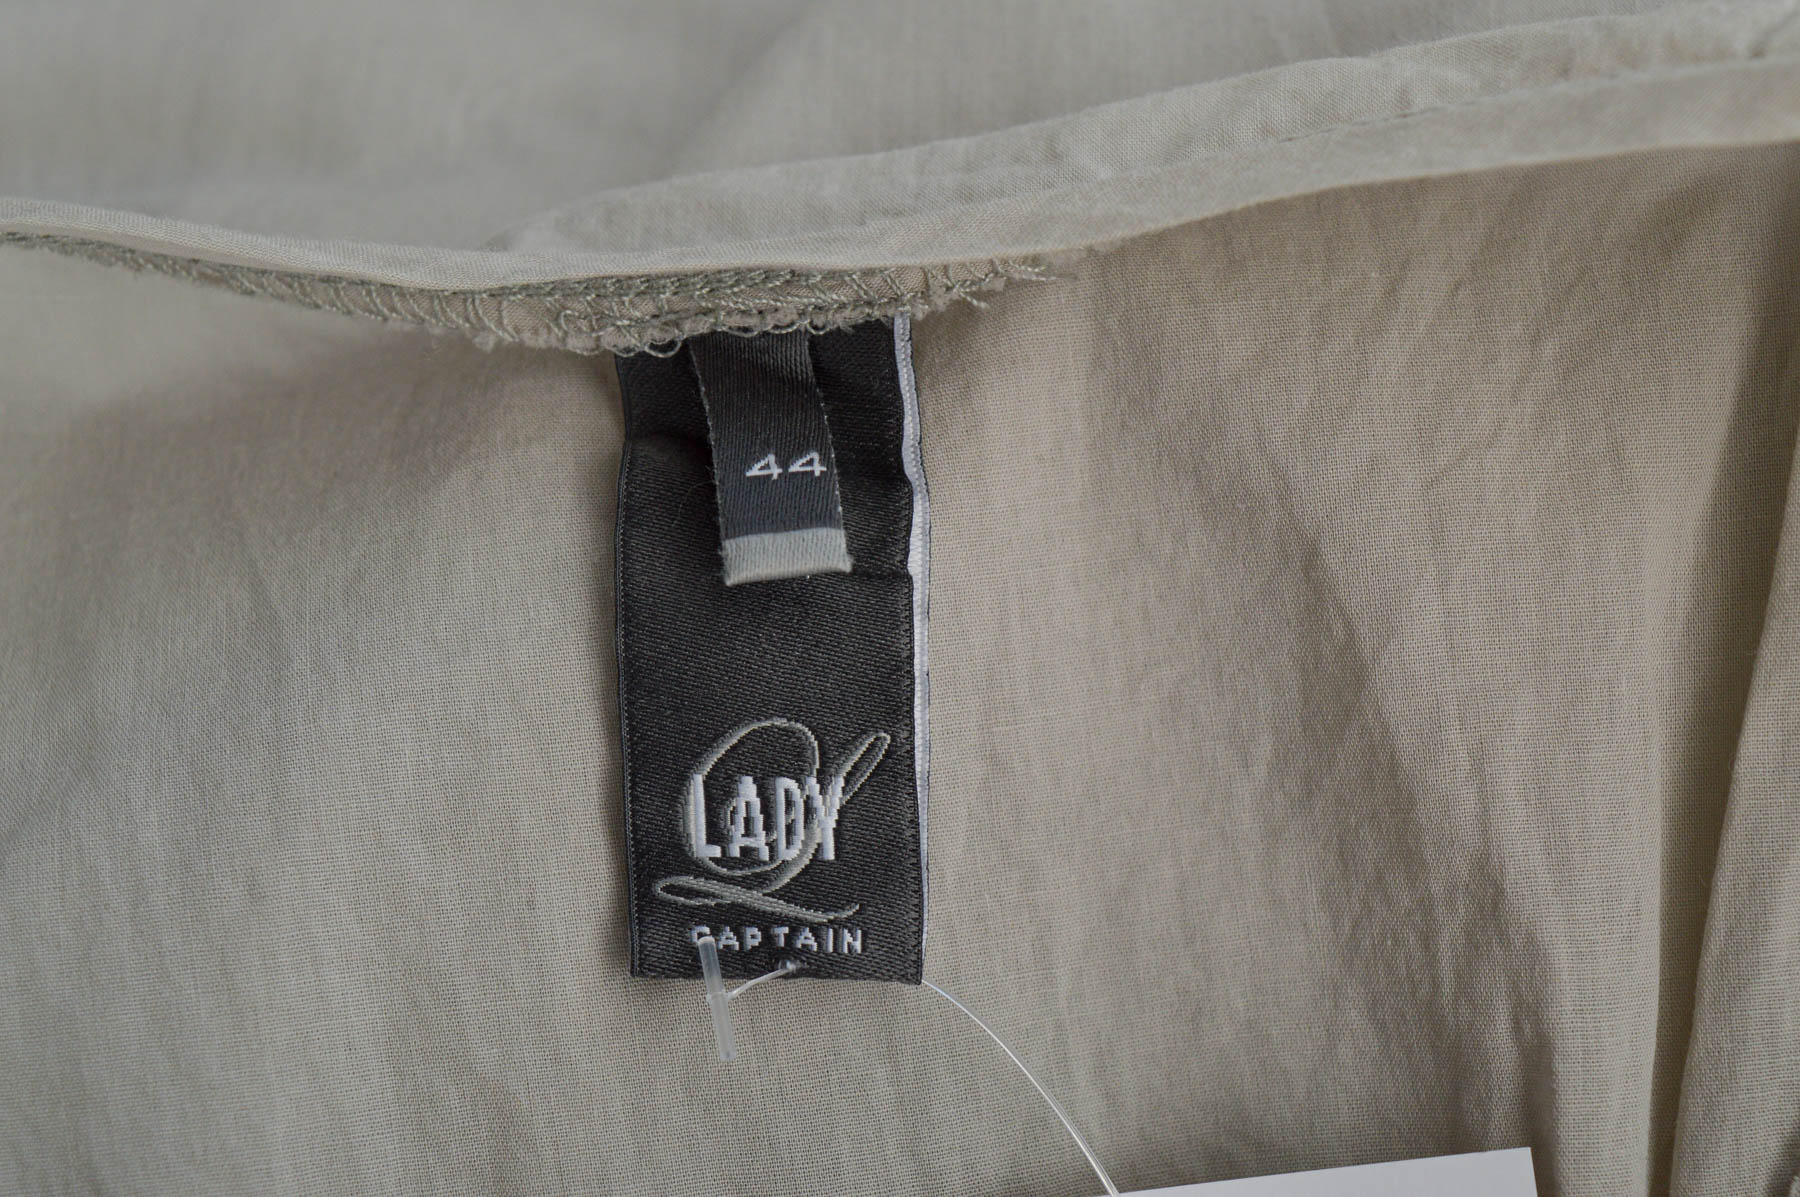 Γυναικείо πουκάμισο - LADY CAPTAIN - 2